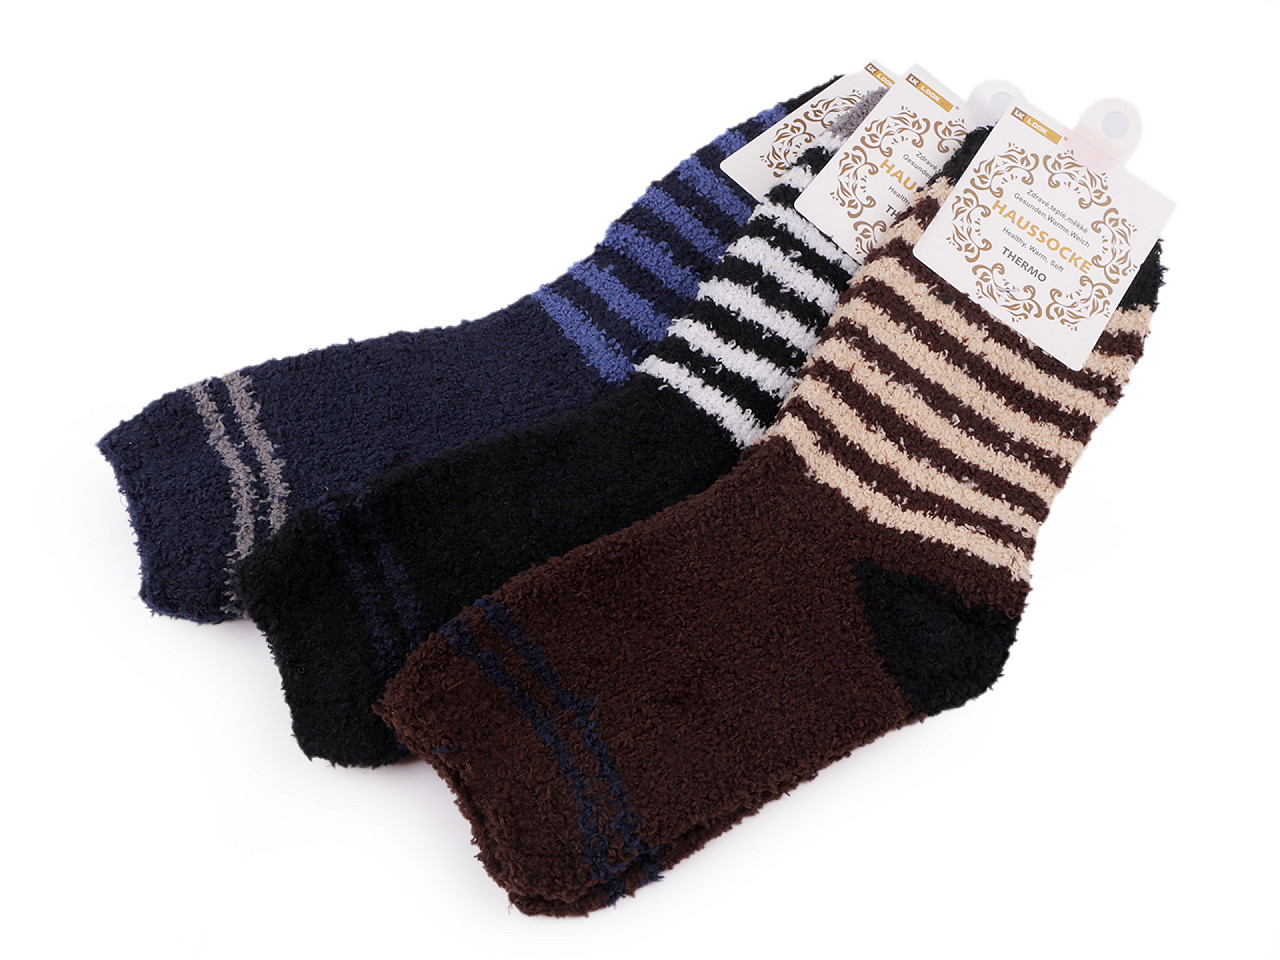 Herren Frottee Socken, Größe: 39 - 43, Mix, 3 Paar